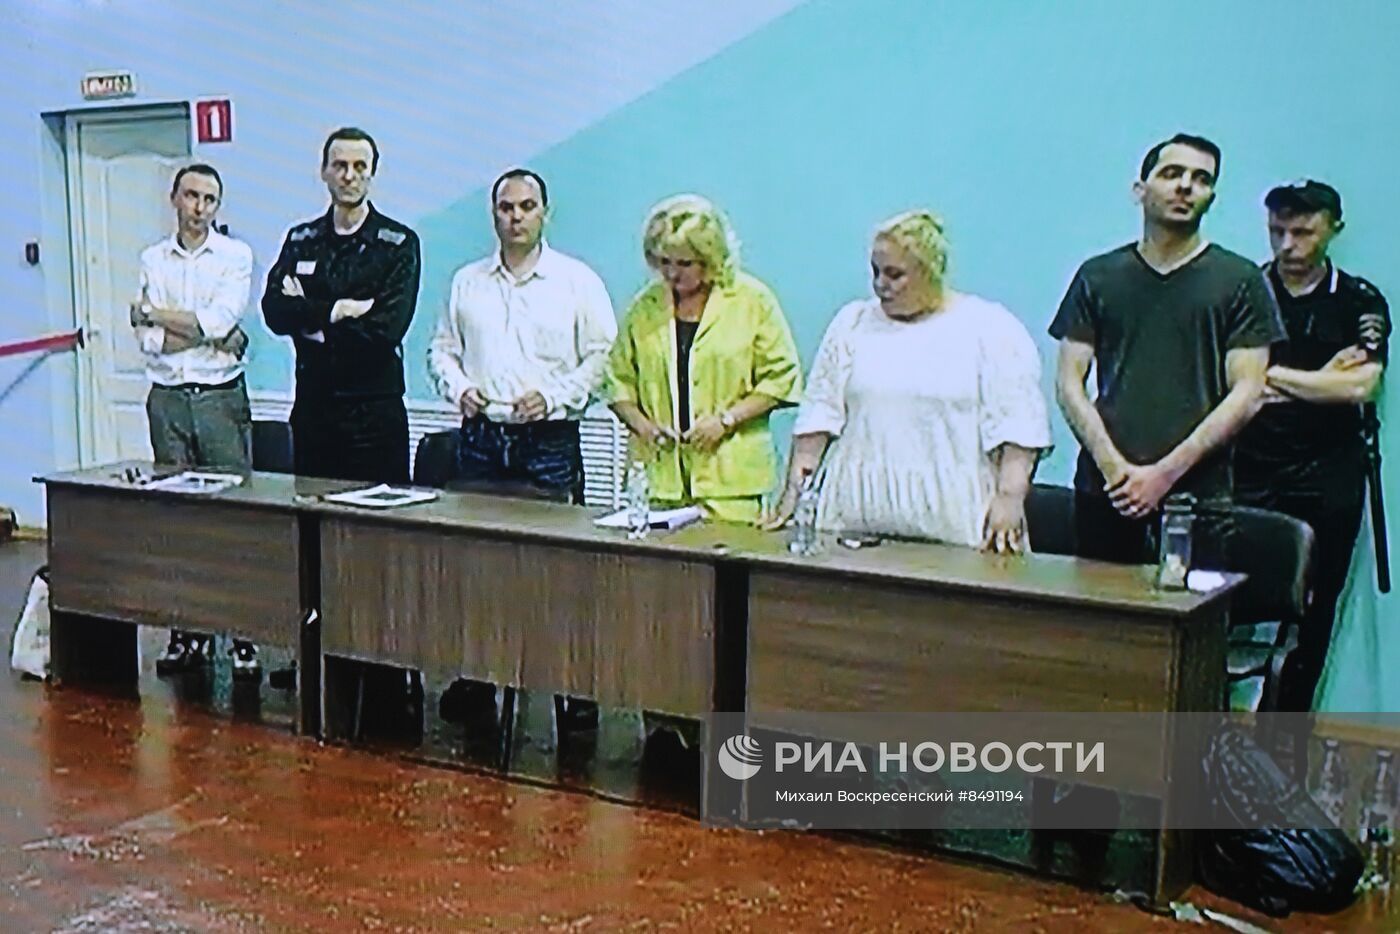 Оглашение приговора А. Навальному по делу об экстремизме